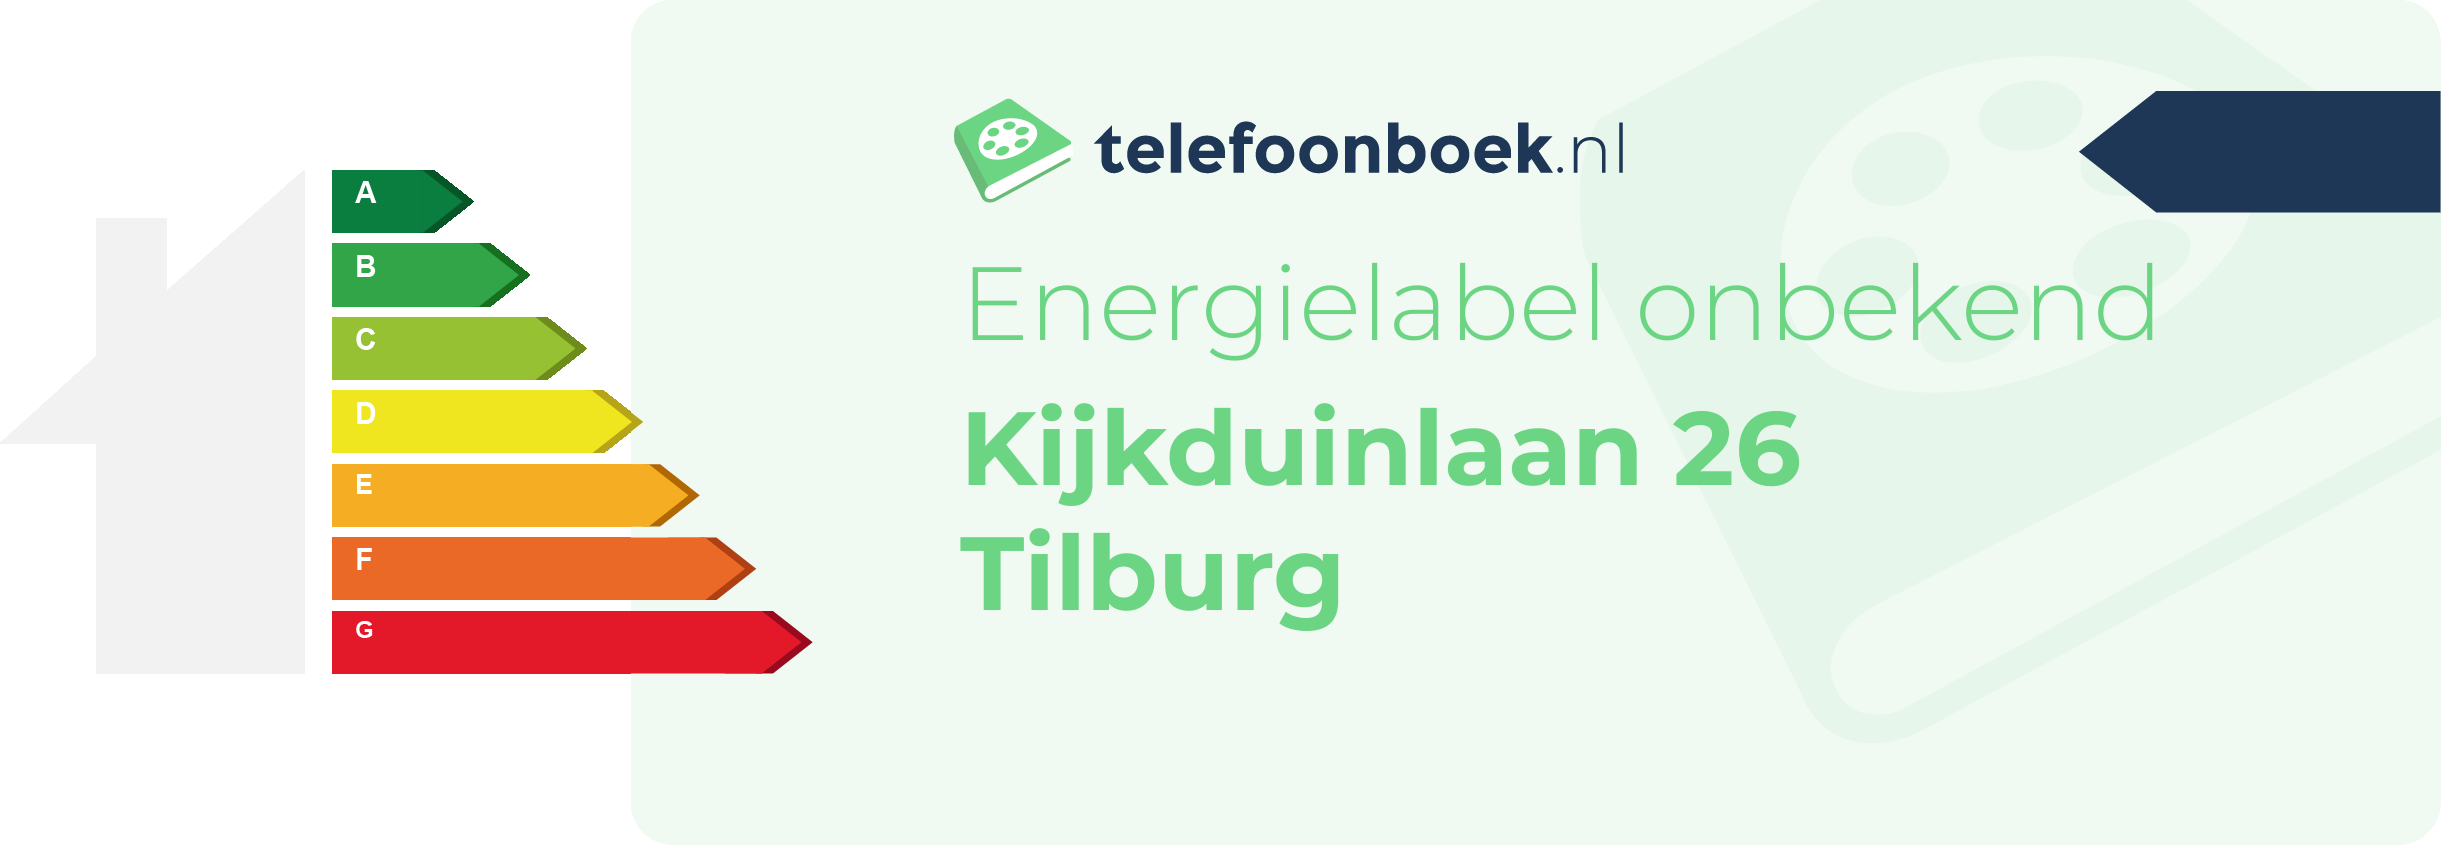 Energielabel Kijkduinlaan 26 Tilburg